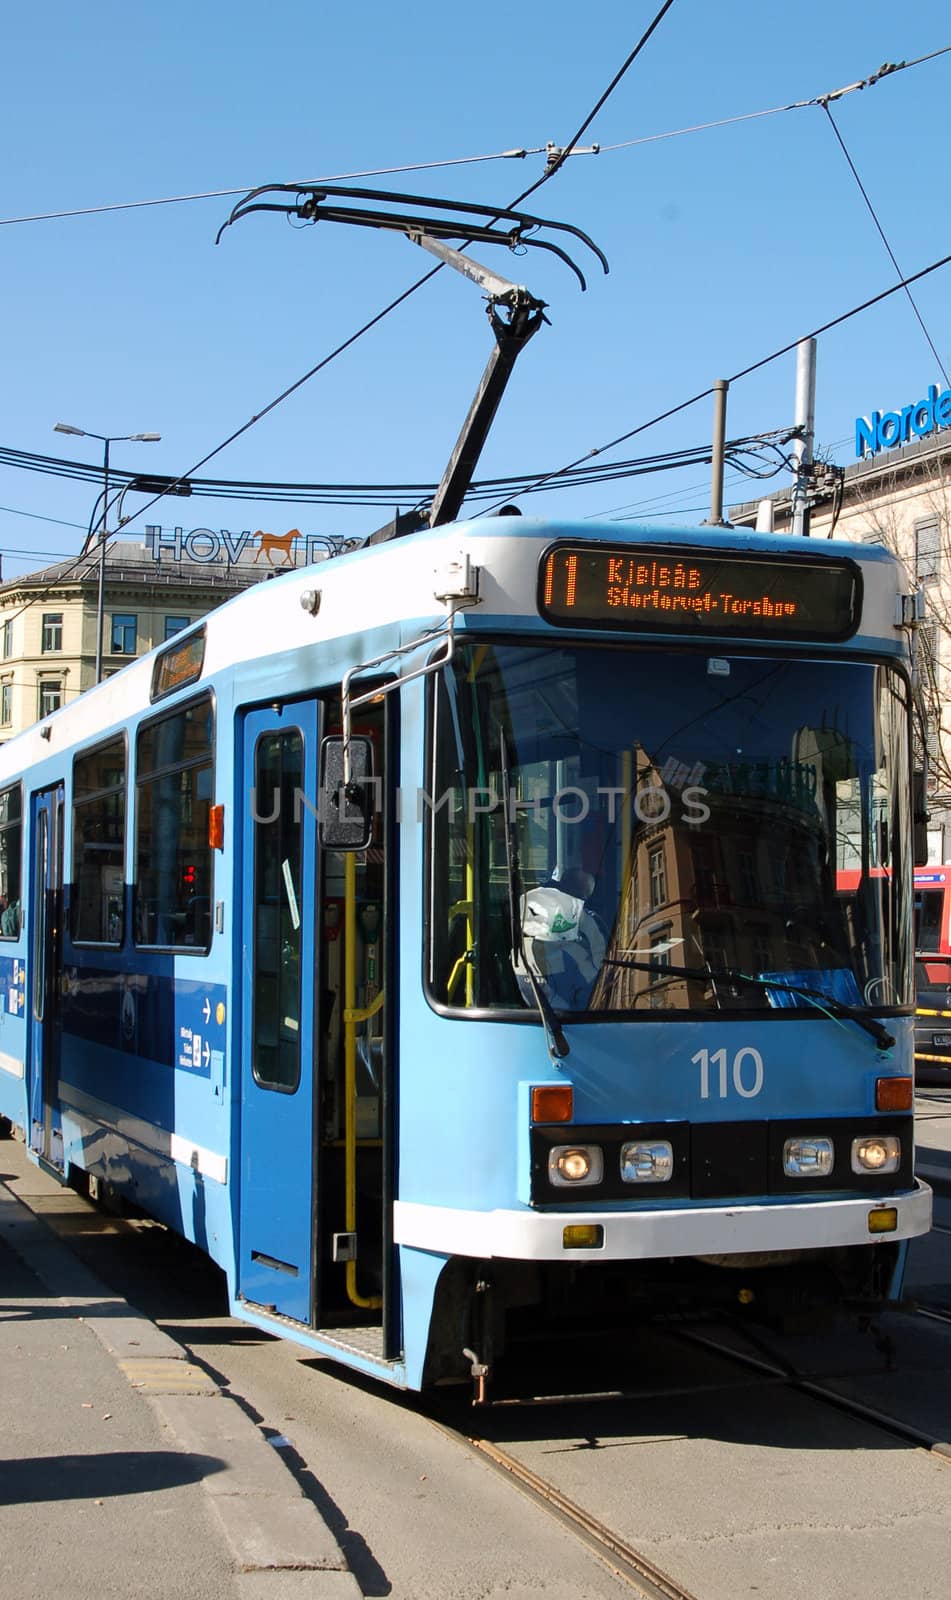 City tram in Oslo Norway